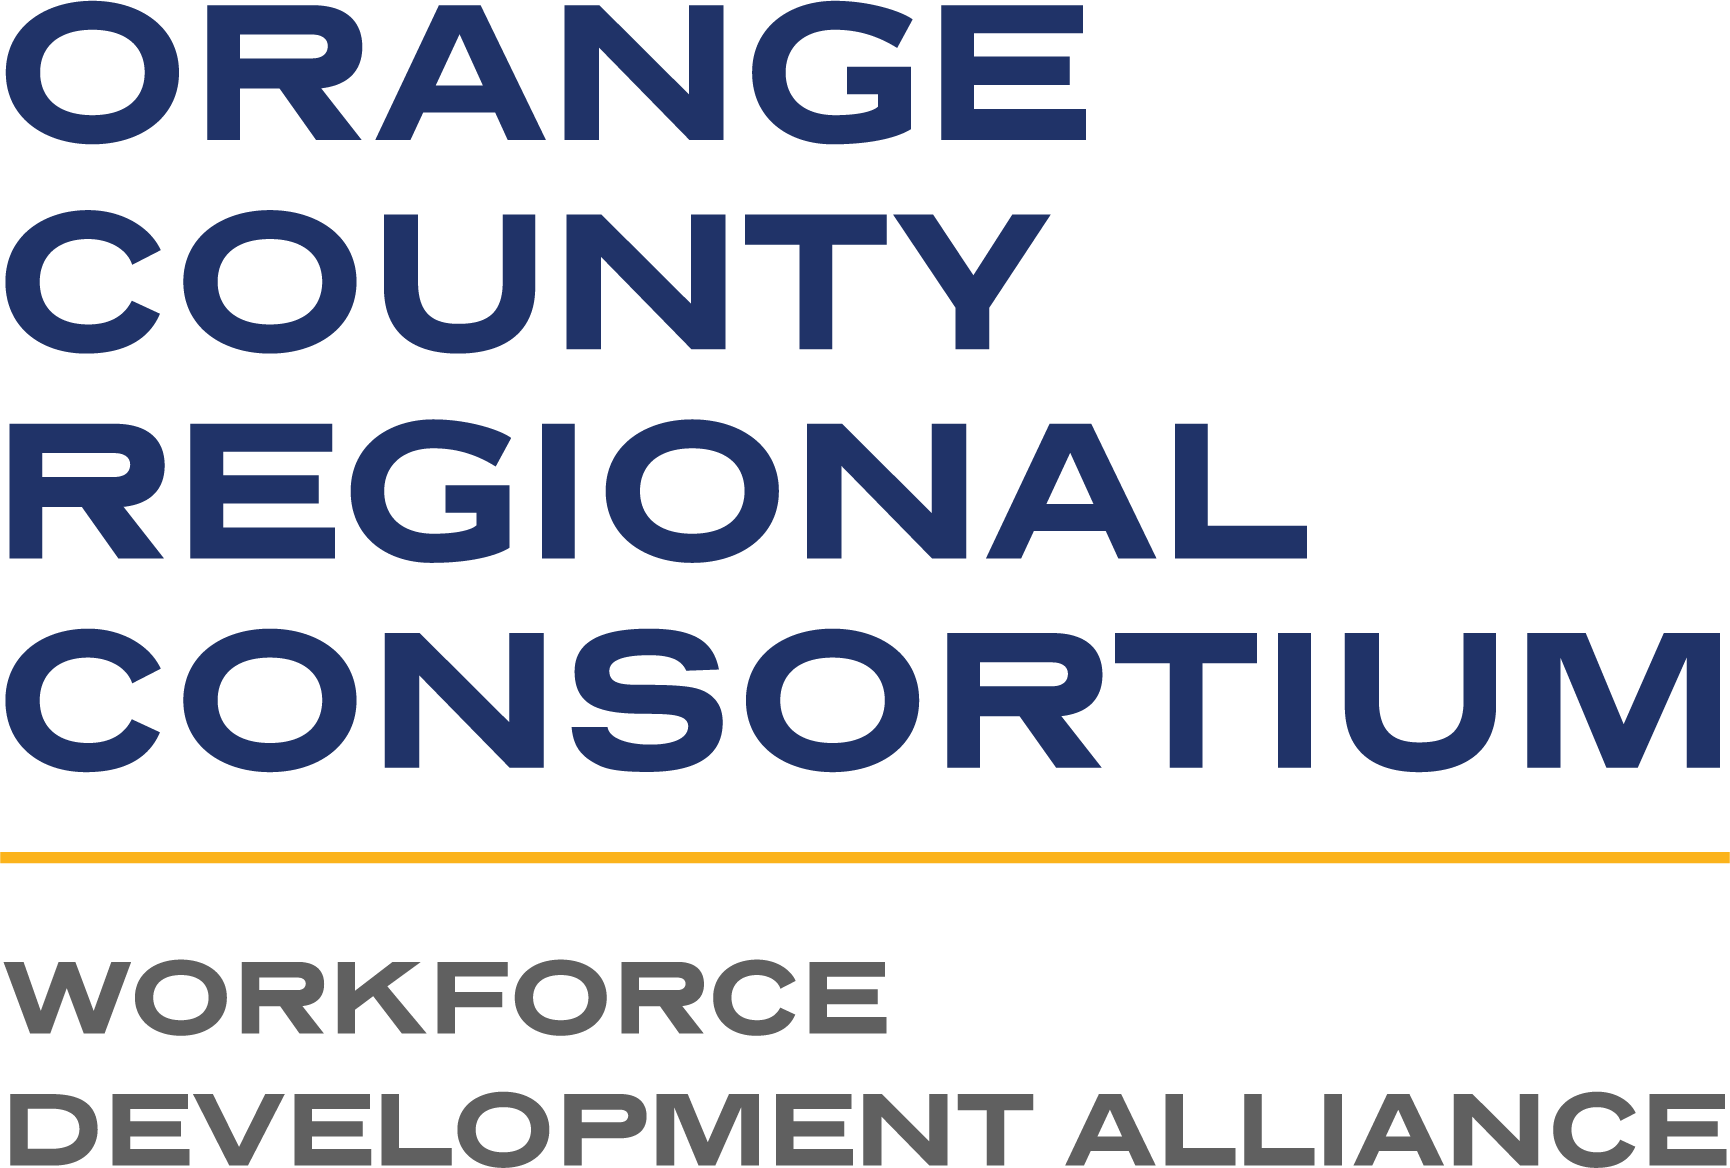 California Community Colleges - Orange County Regional Consortium